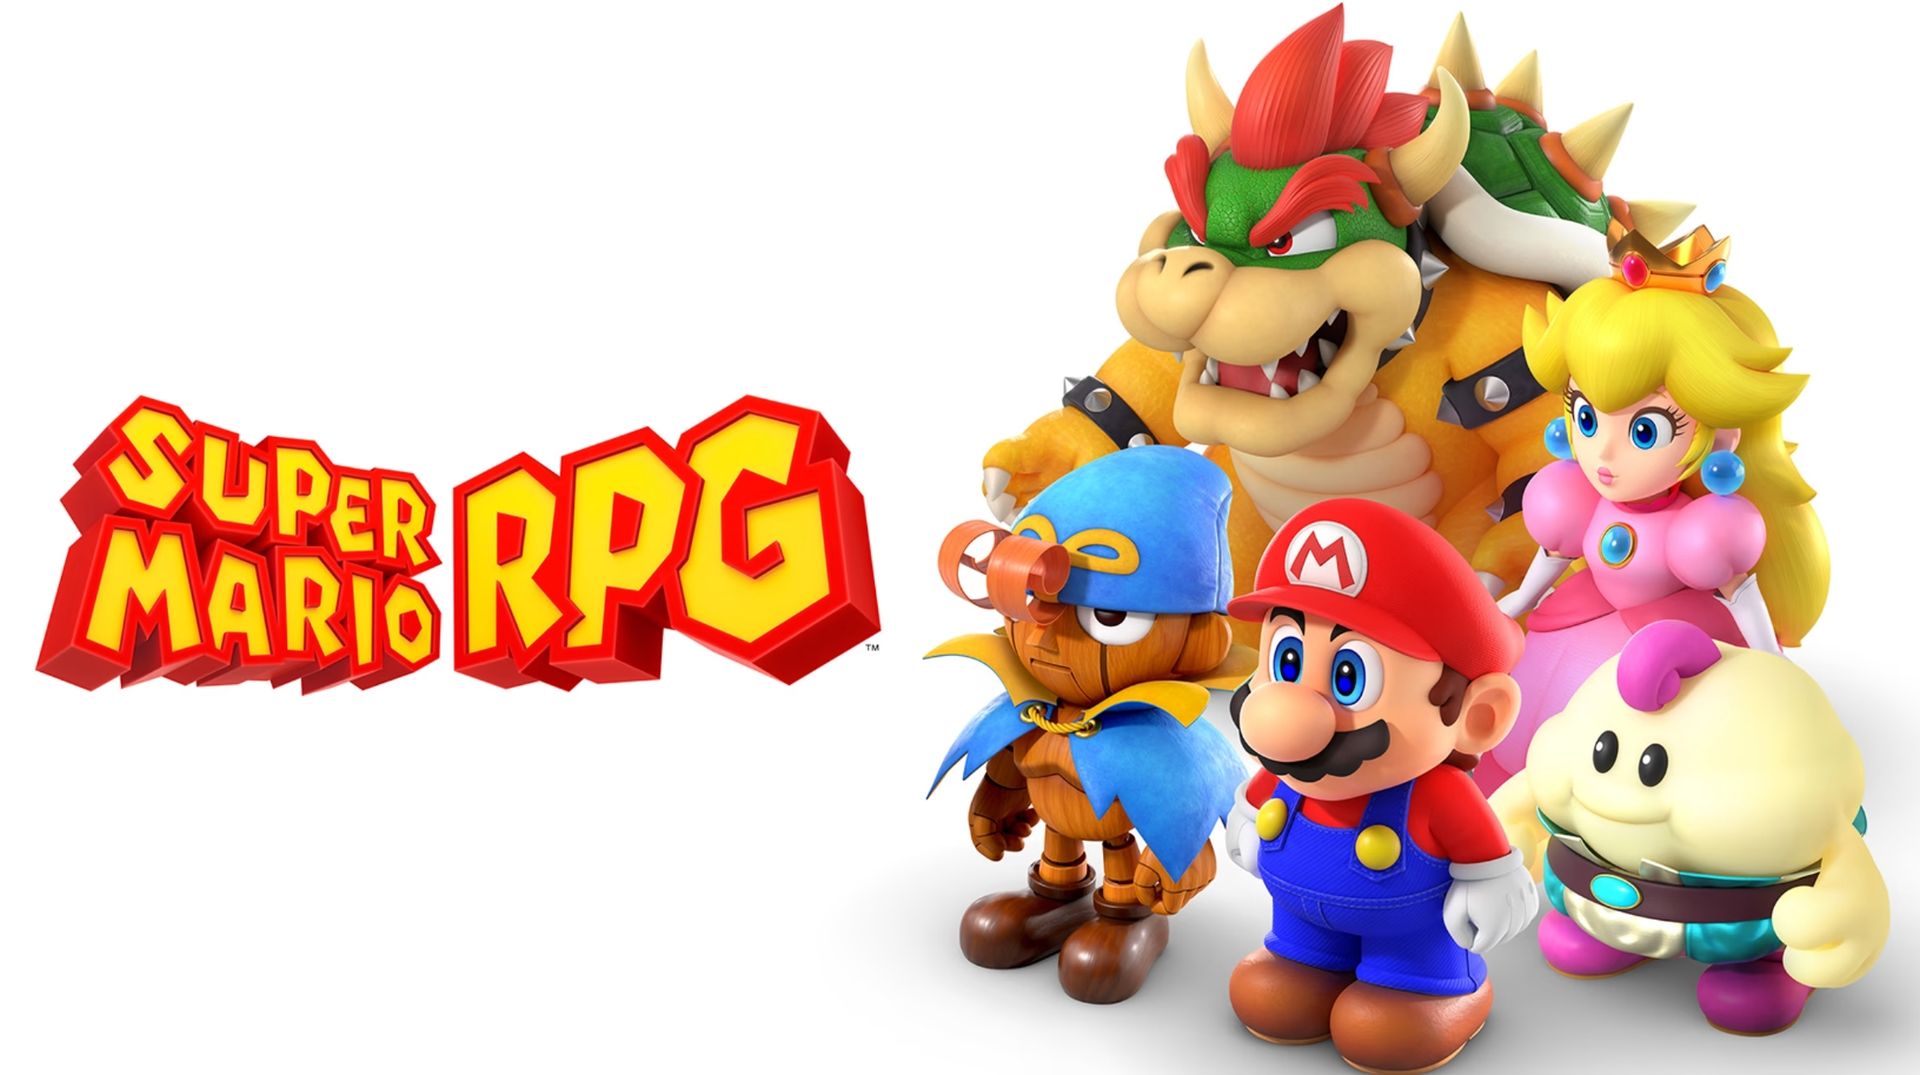 Super Mario RPG post game content